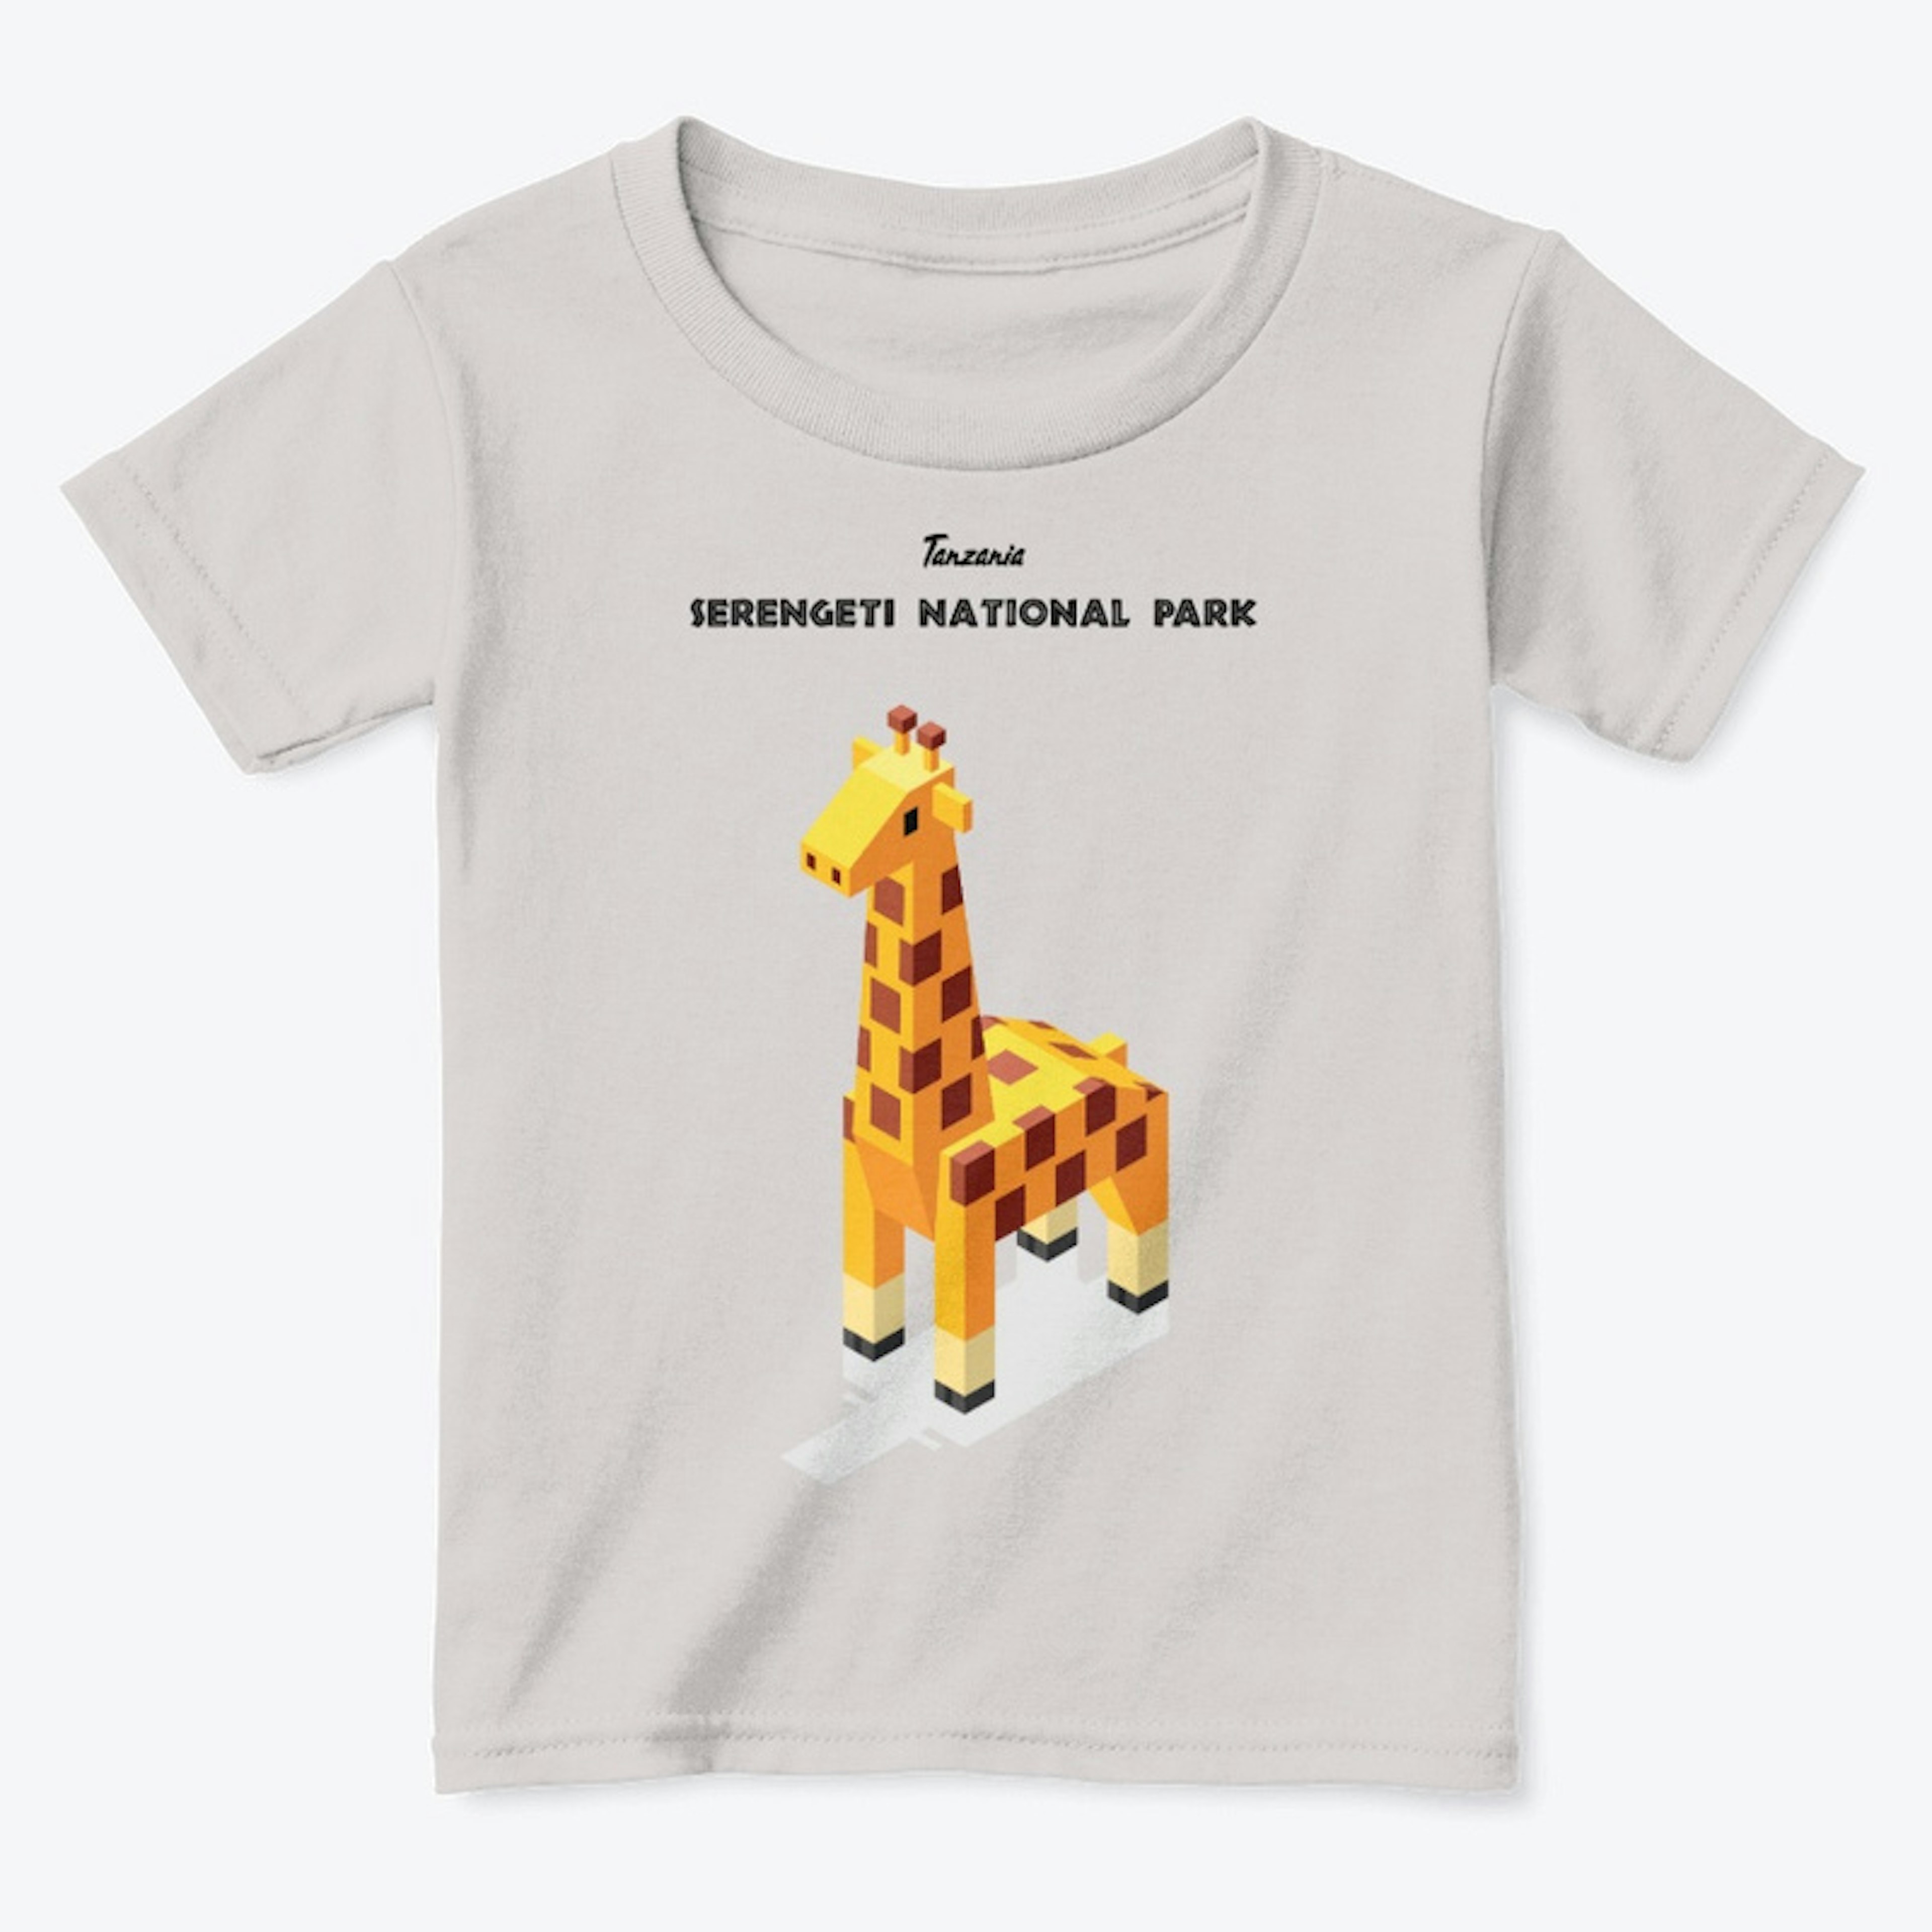 Animals of Serengeti - giraffe